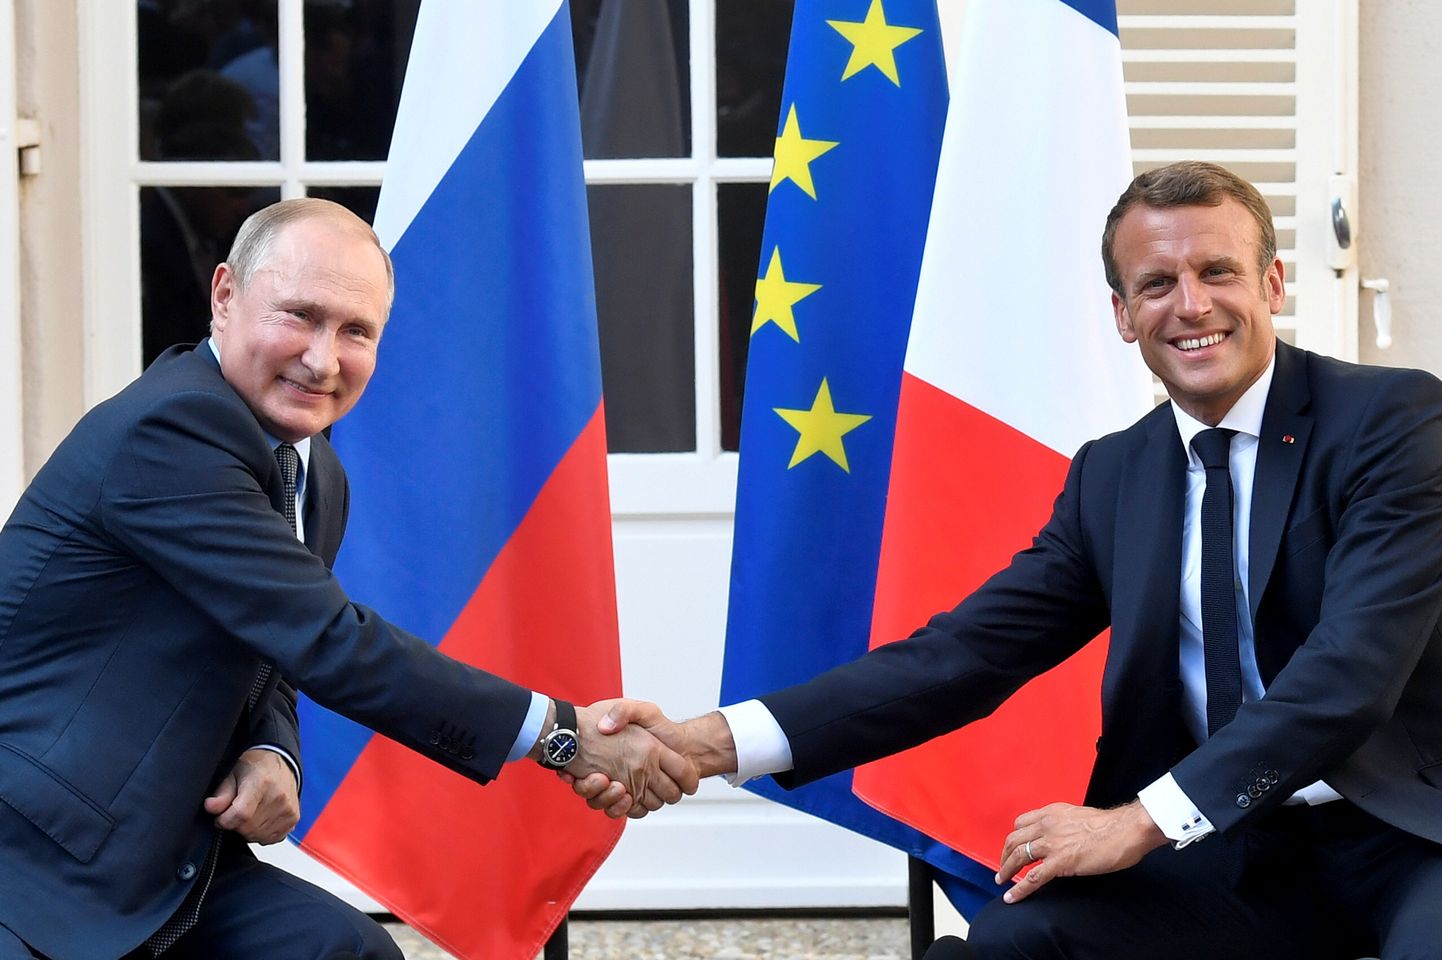 Prantsuse president Emmanuel Macron surumas kätt Venemaa presidendi Vladimir Putiniga 19. augustil enne G7 tippkohtumist.